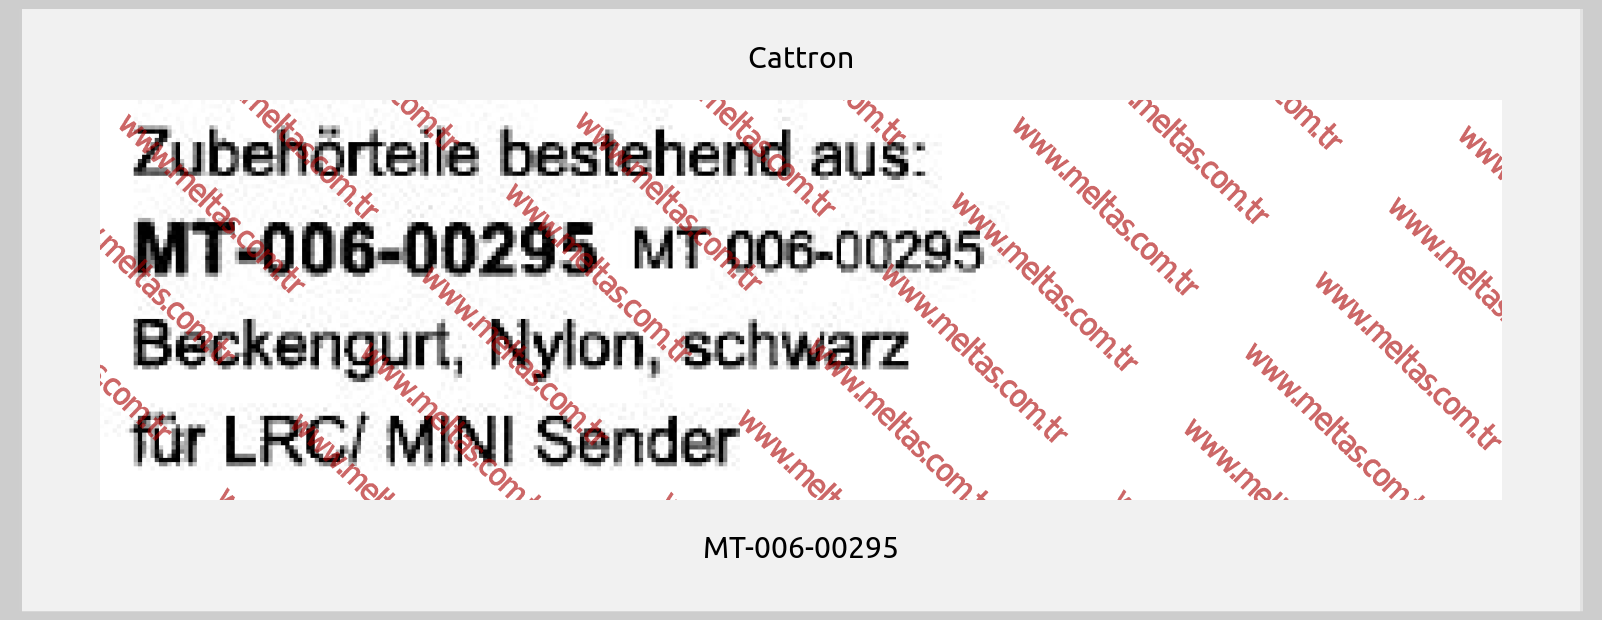 Cattron - MT-006-00295